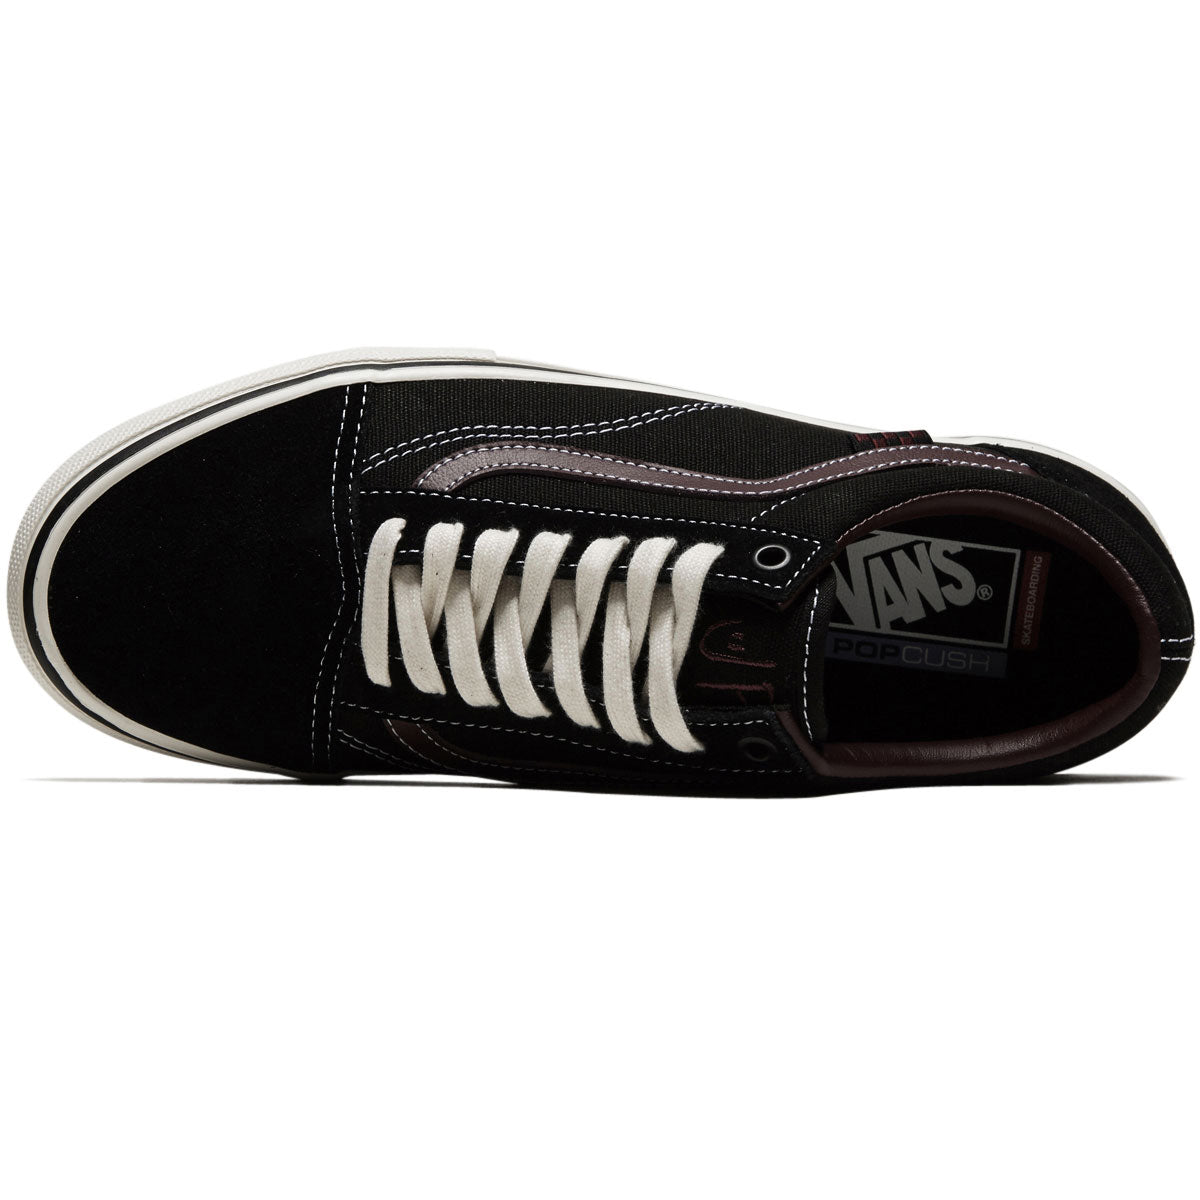 Vans Skate Old Skool Shoes - Jill Perkins Black/Burgundy – CCS